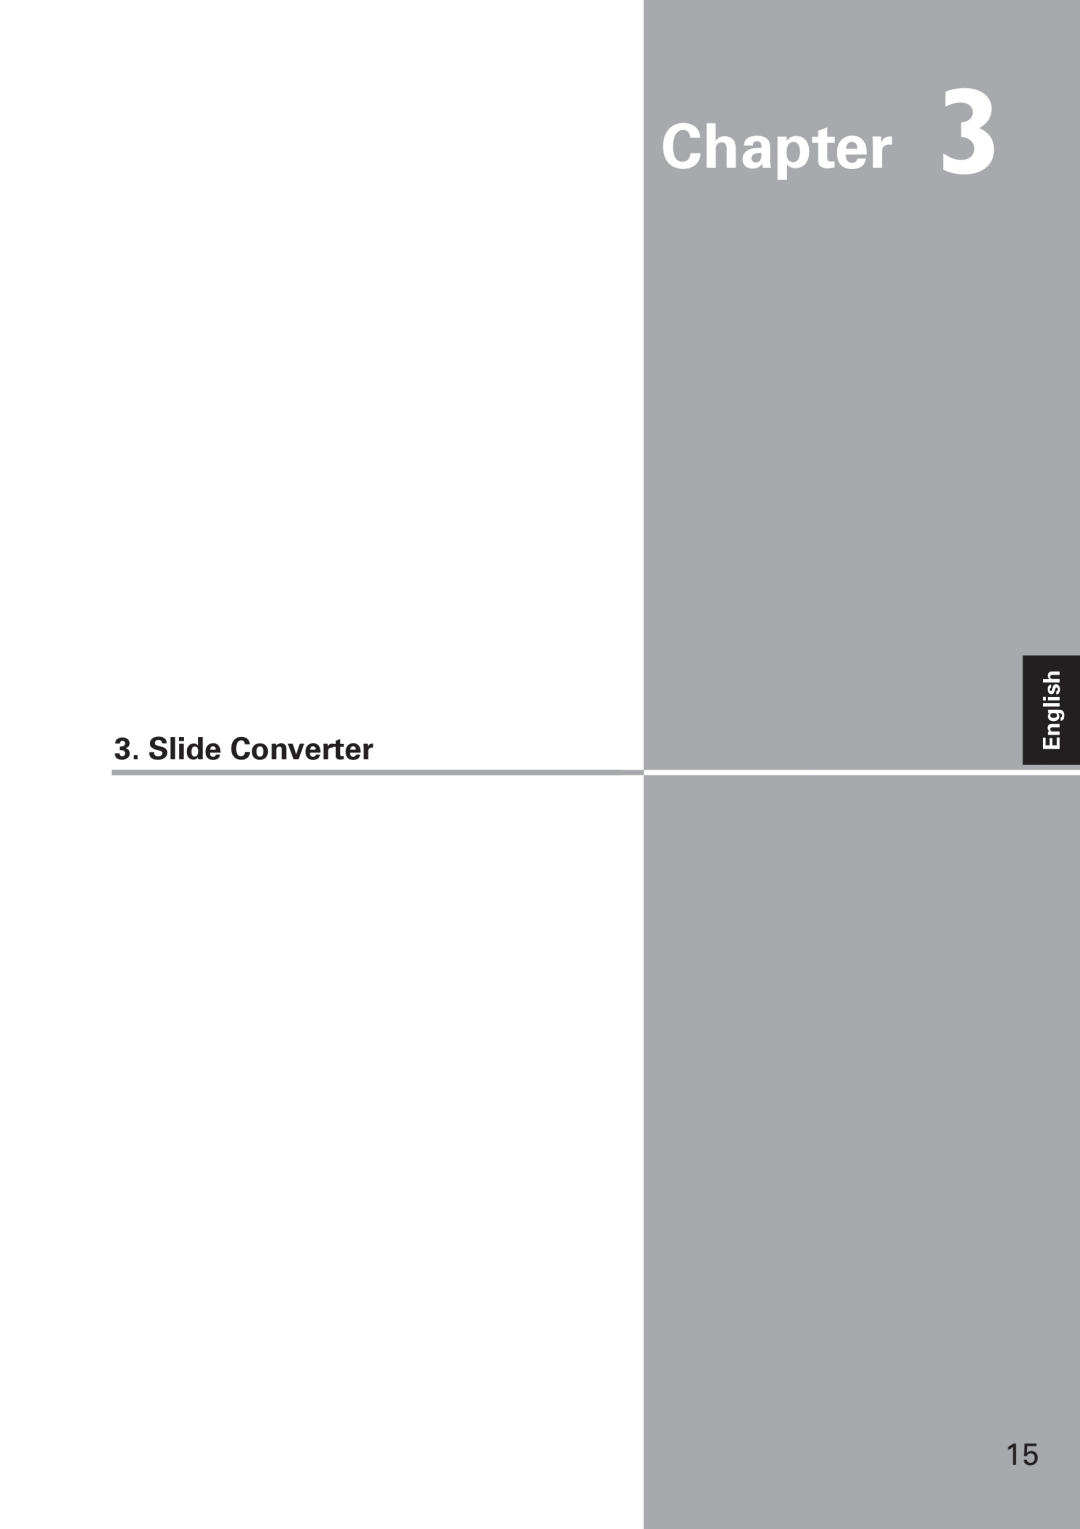 Eiki WL-10 owner manual Chapter, Slide Converter, English 